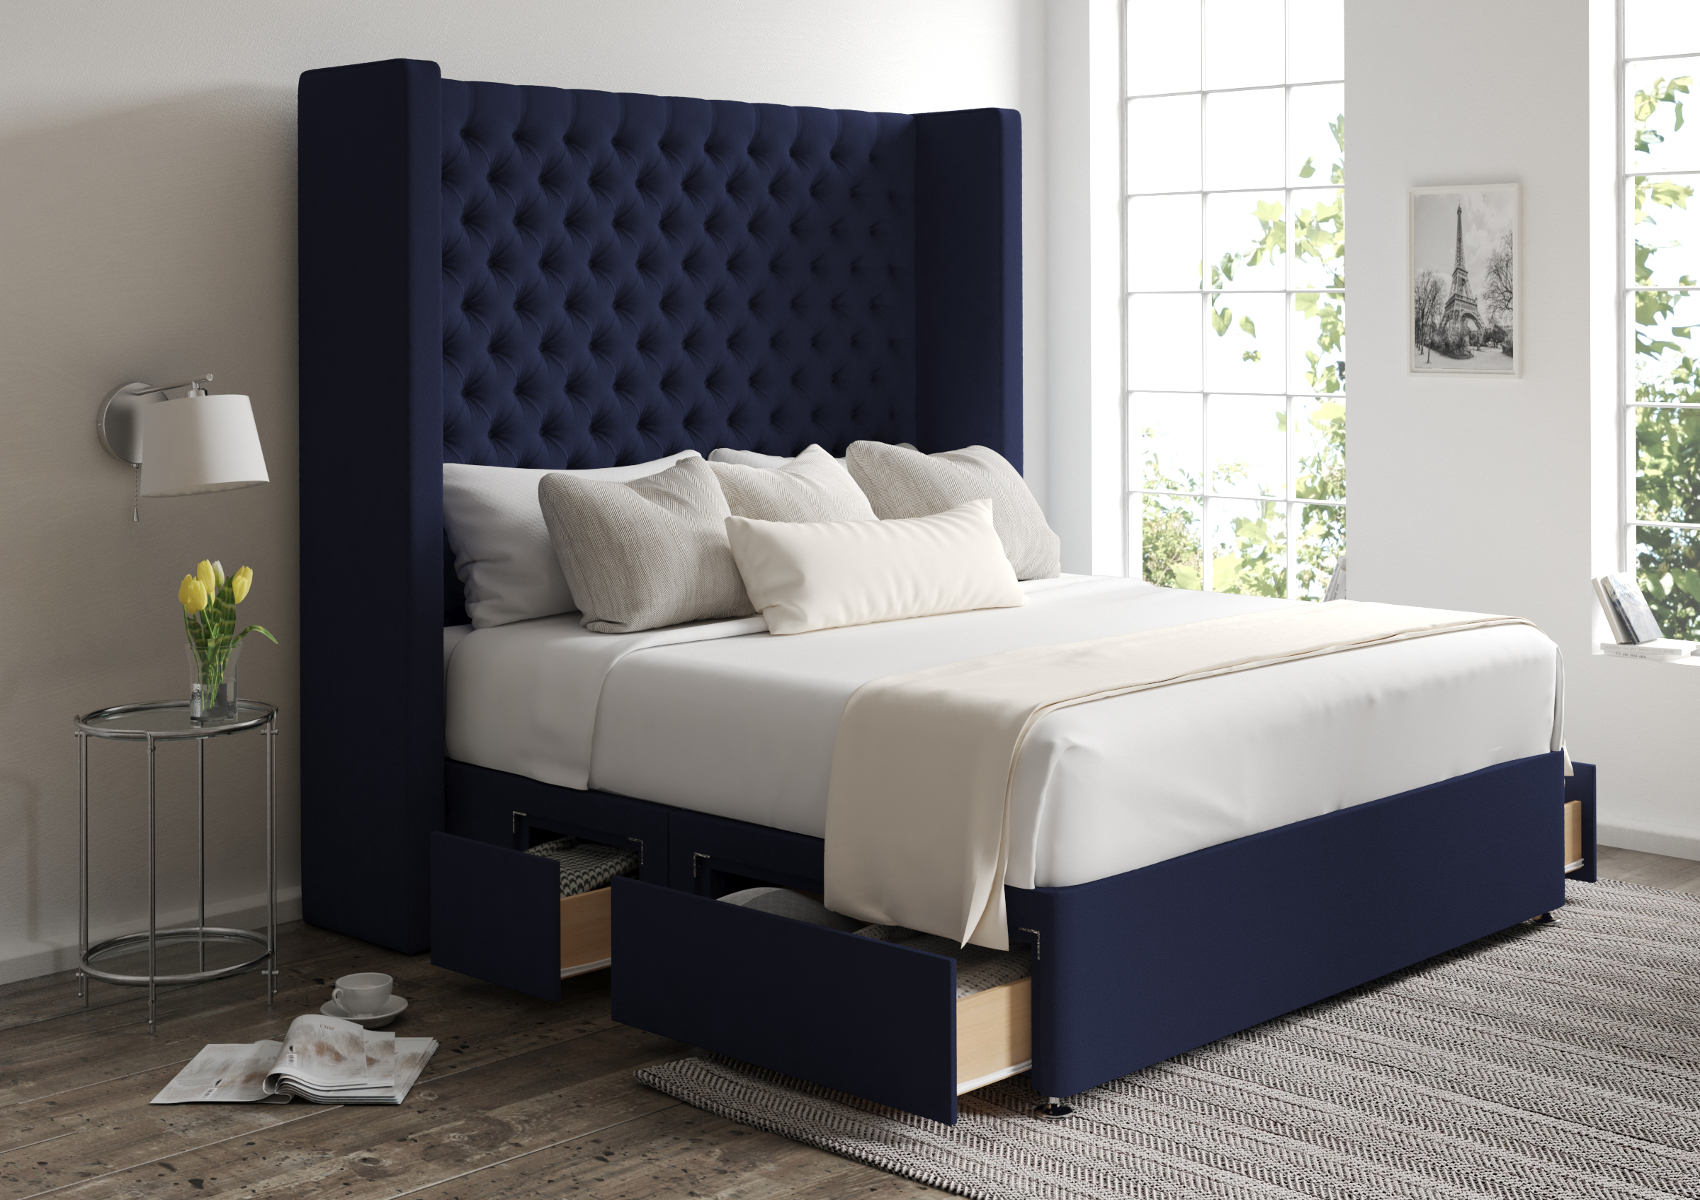 View Emma Hugo Royal Upholstered Super King Storage Bed Time4Sleep information